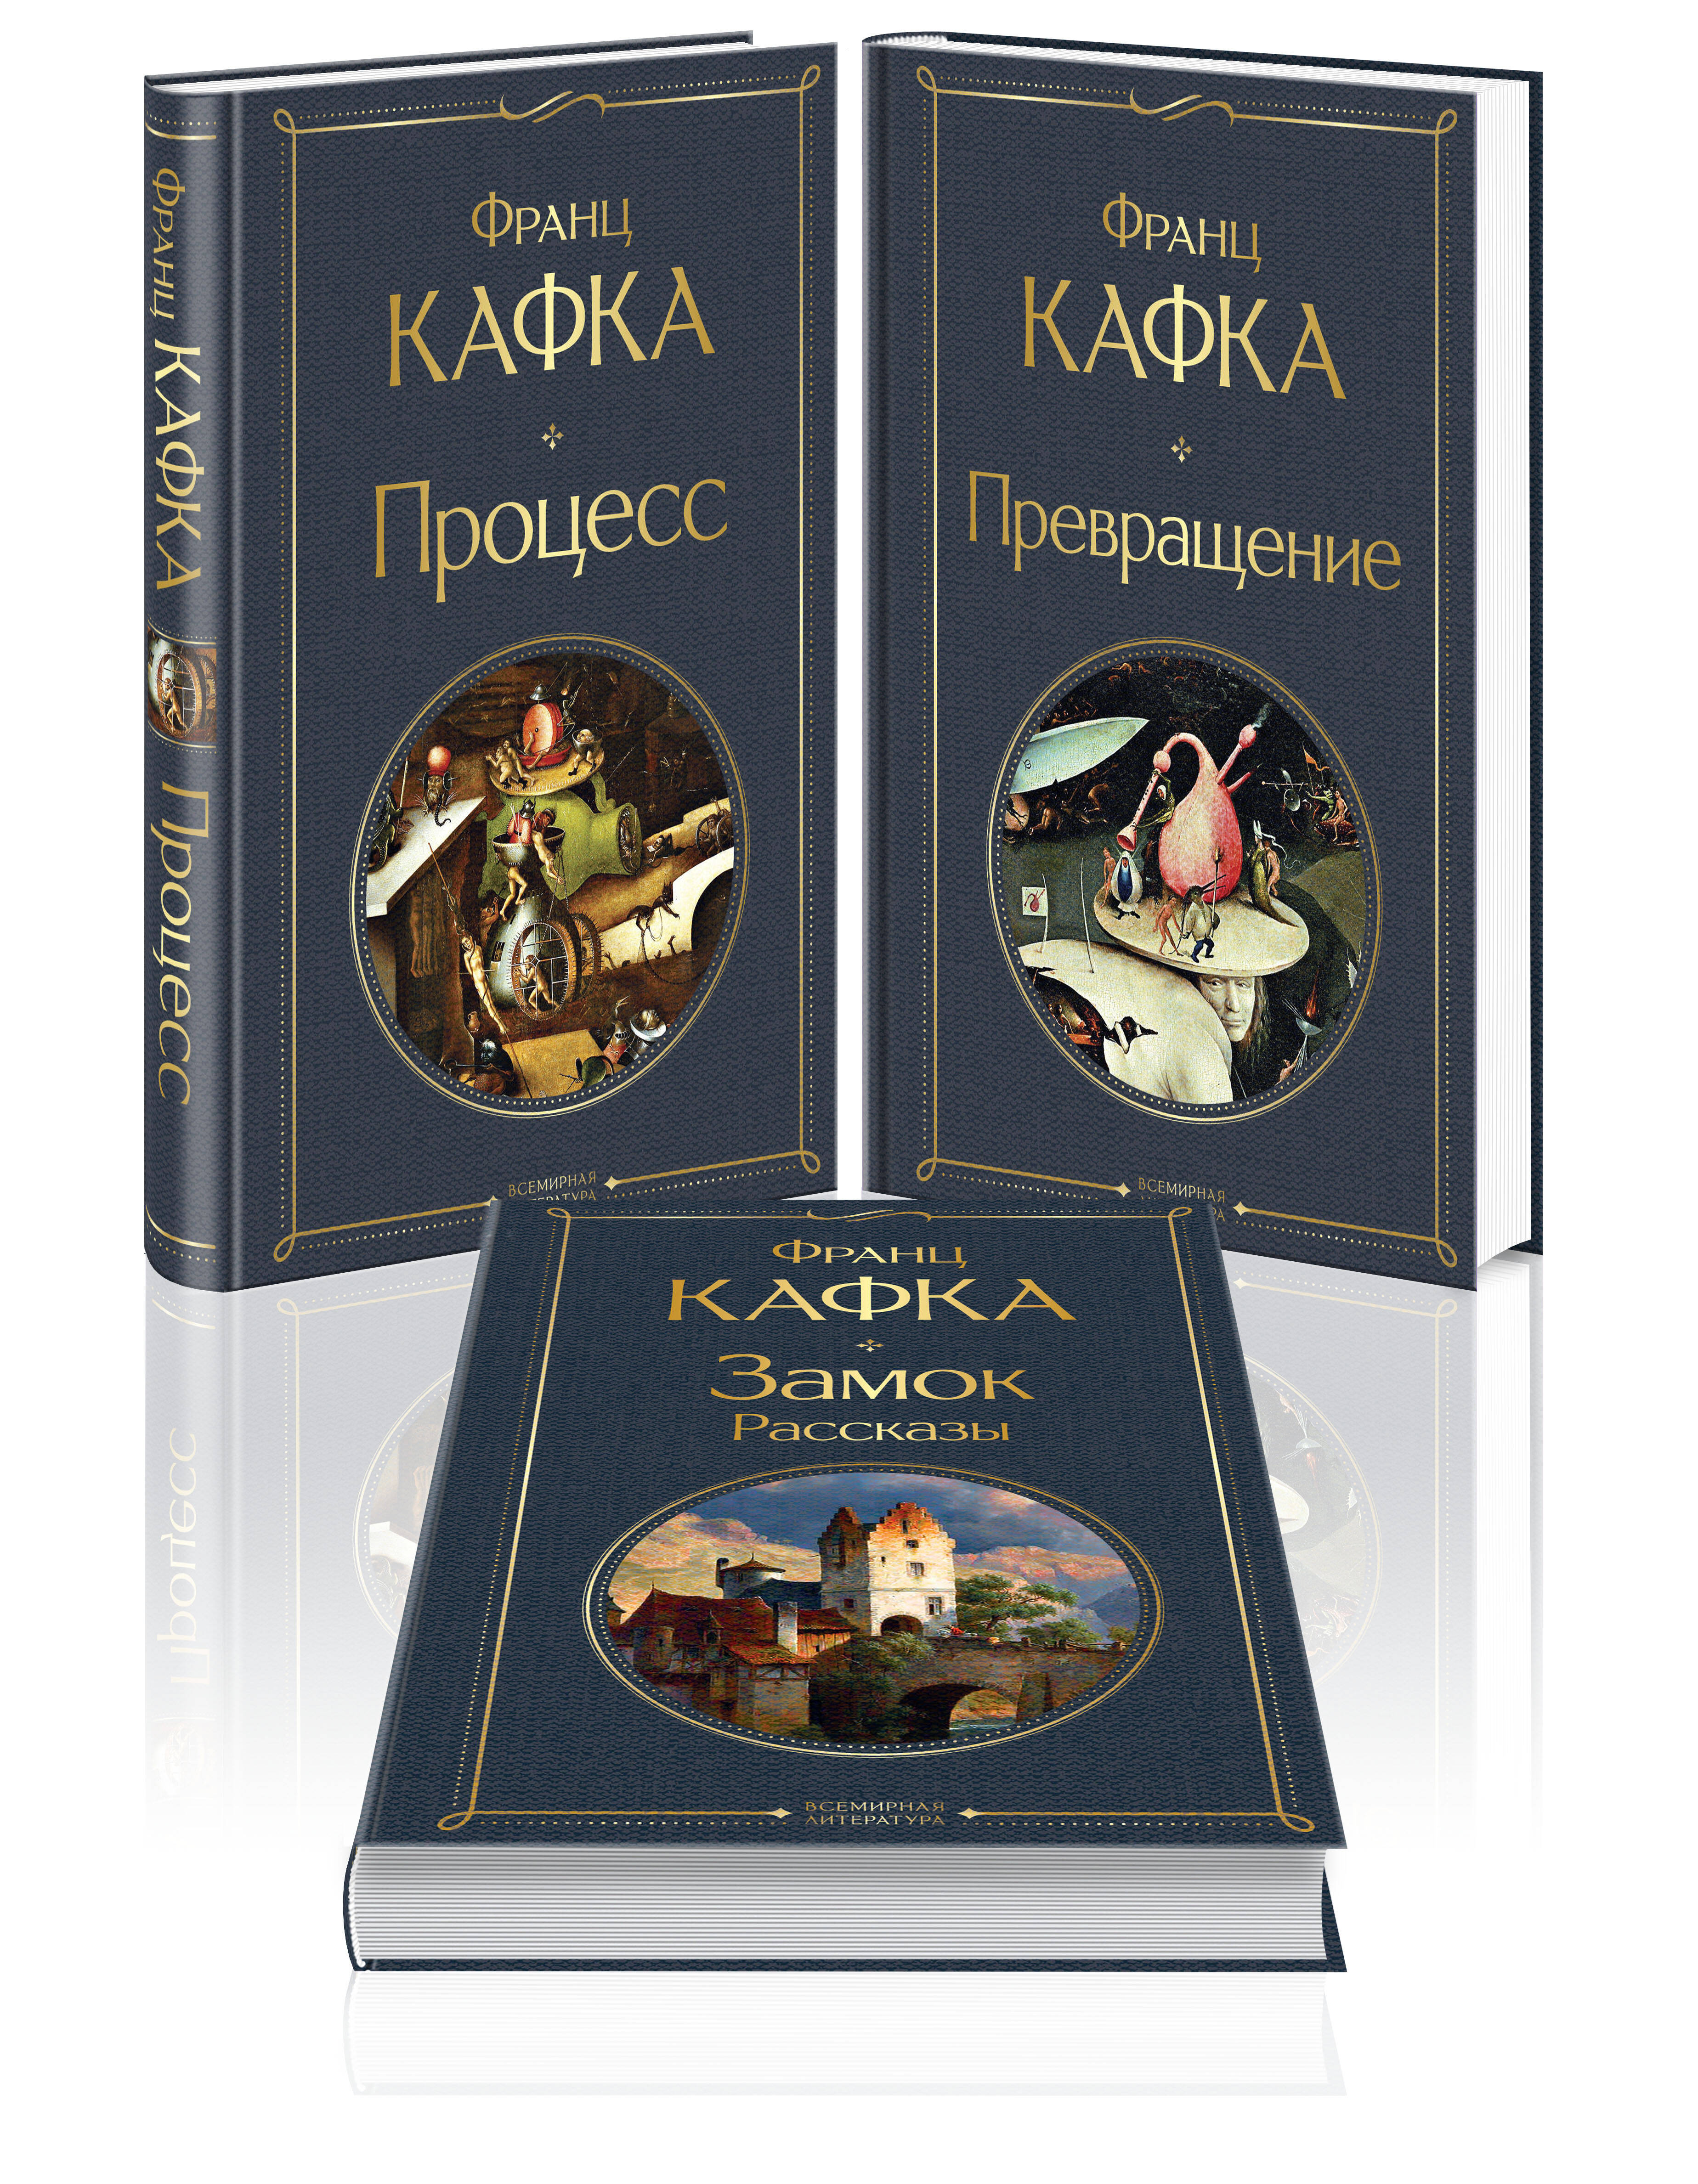  книга Набор: Самые известные произведения Франца Кафки (комплект из 3 книг: 